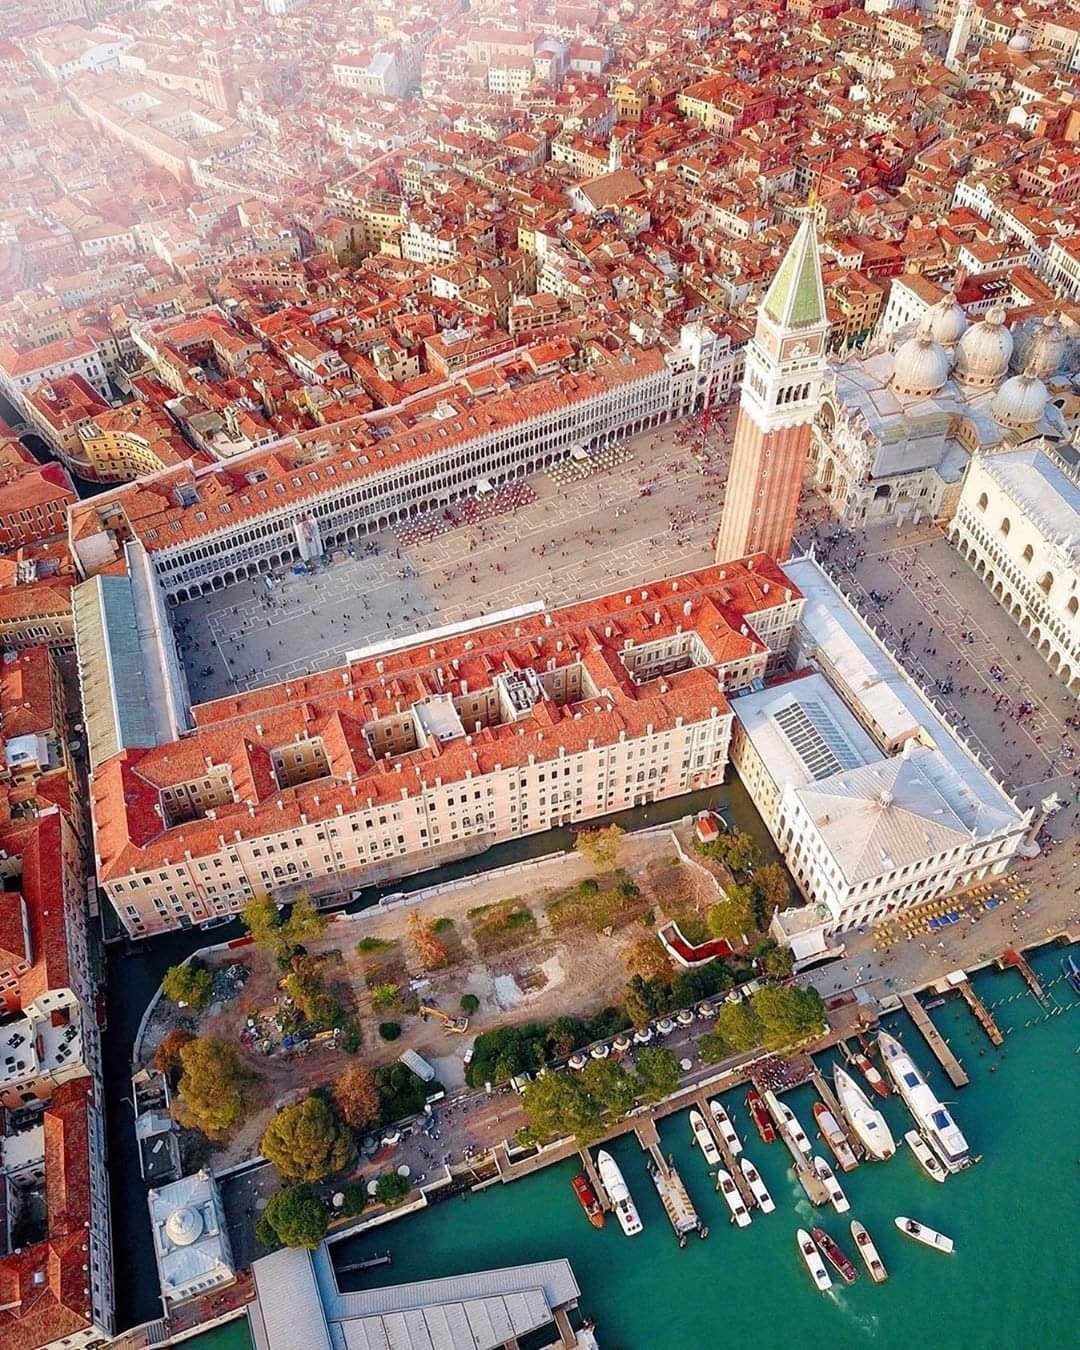 וונציה בעיניו של שוחר תרבות ואמנות